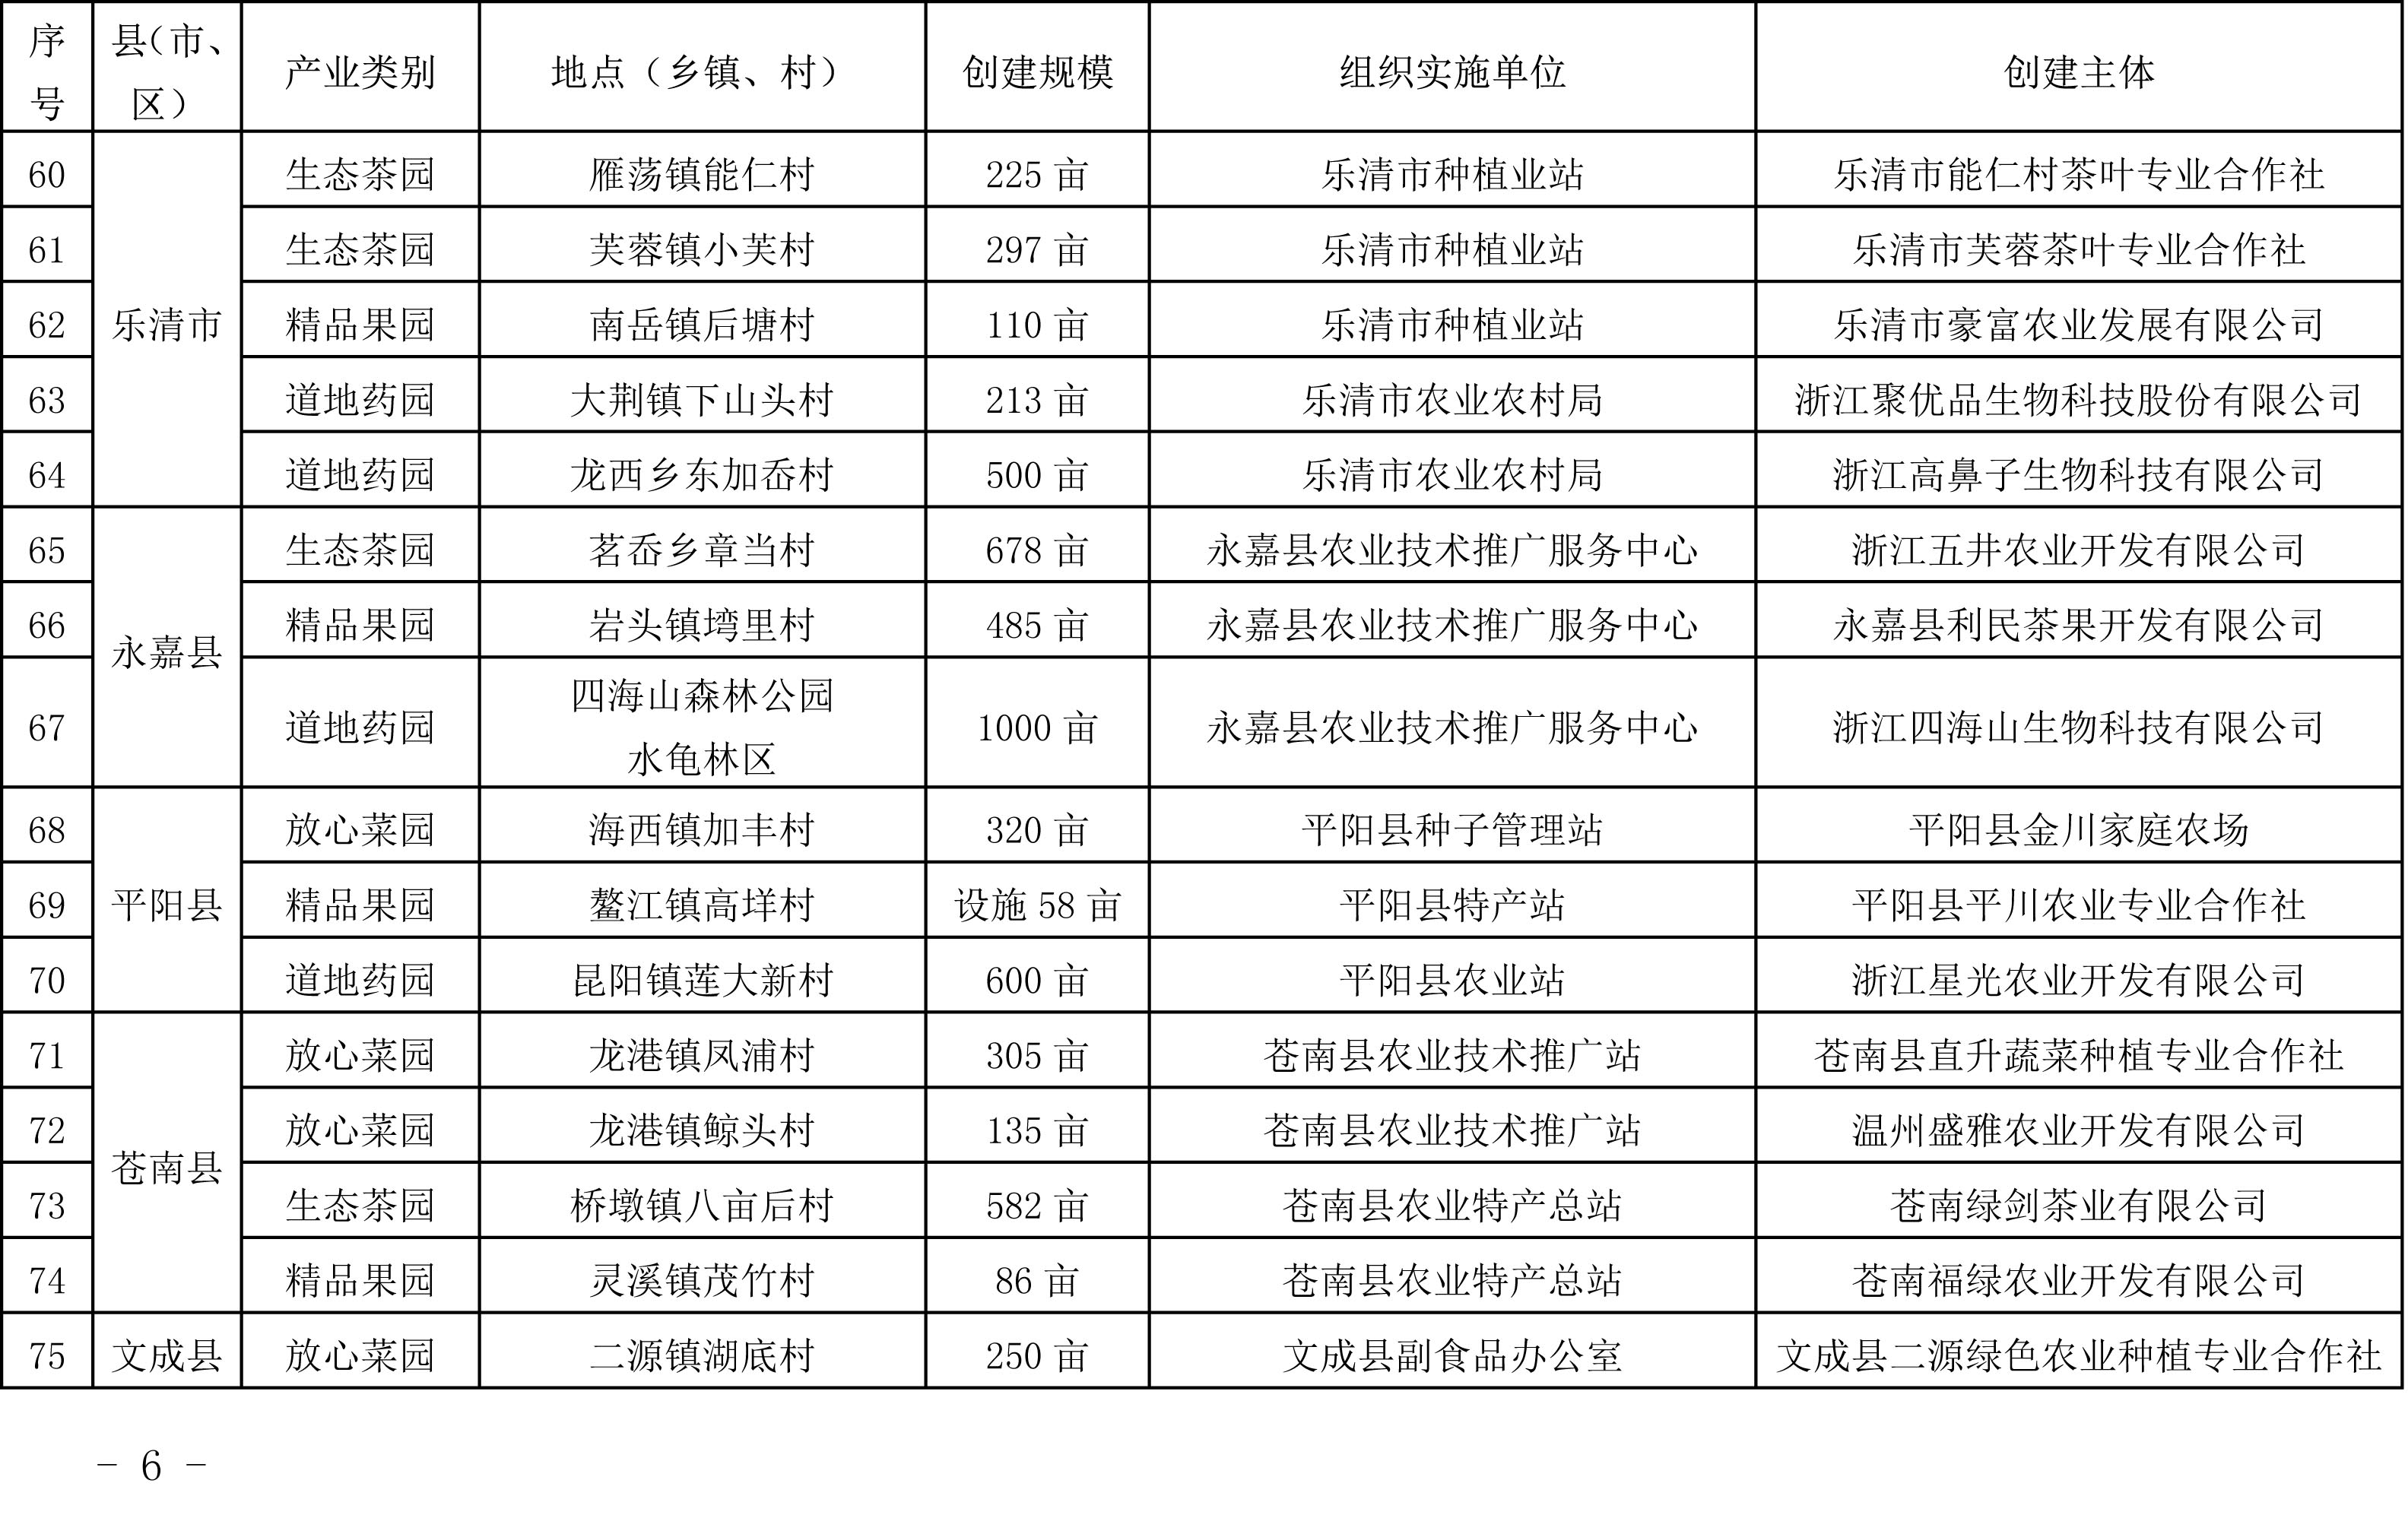 浙江省农业农村厅关于公布2019年度种植业“五园”创建省级示范基地名单的通知(图6)